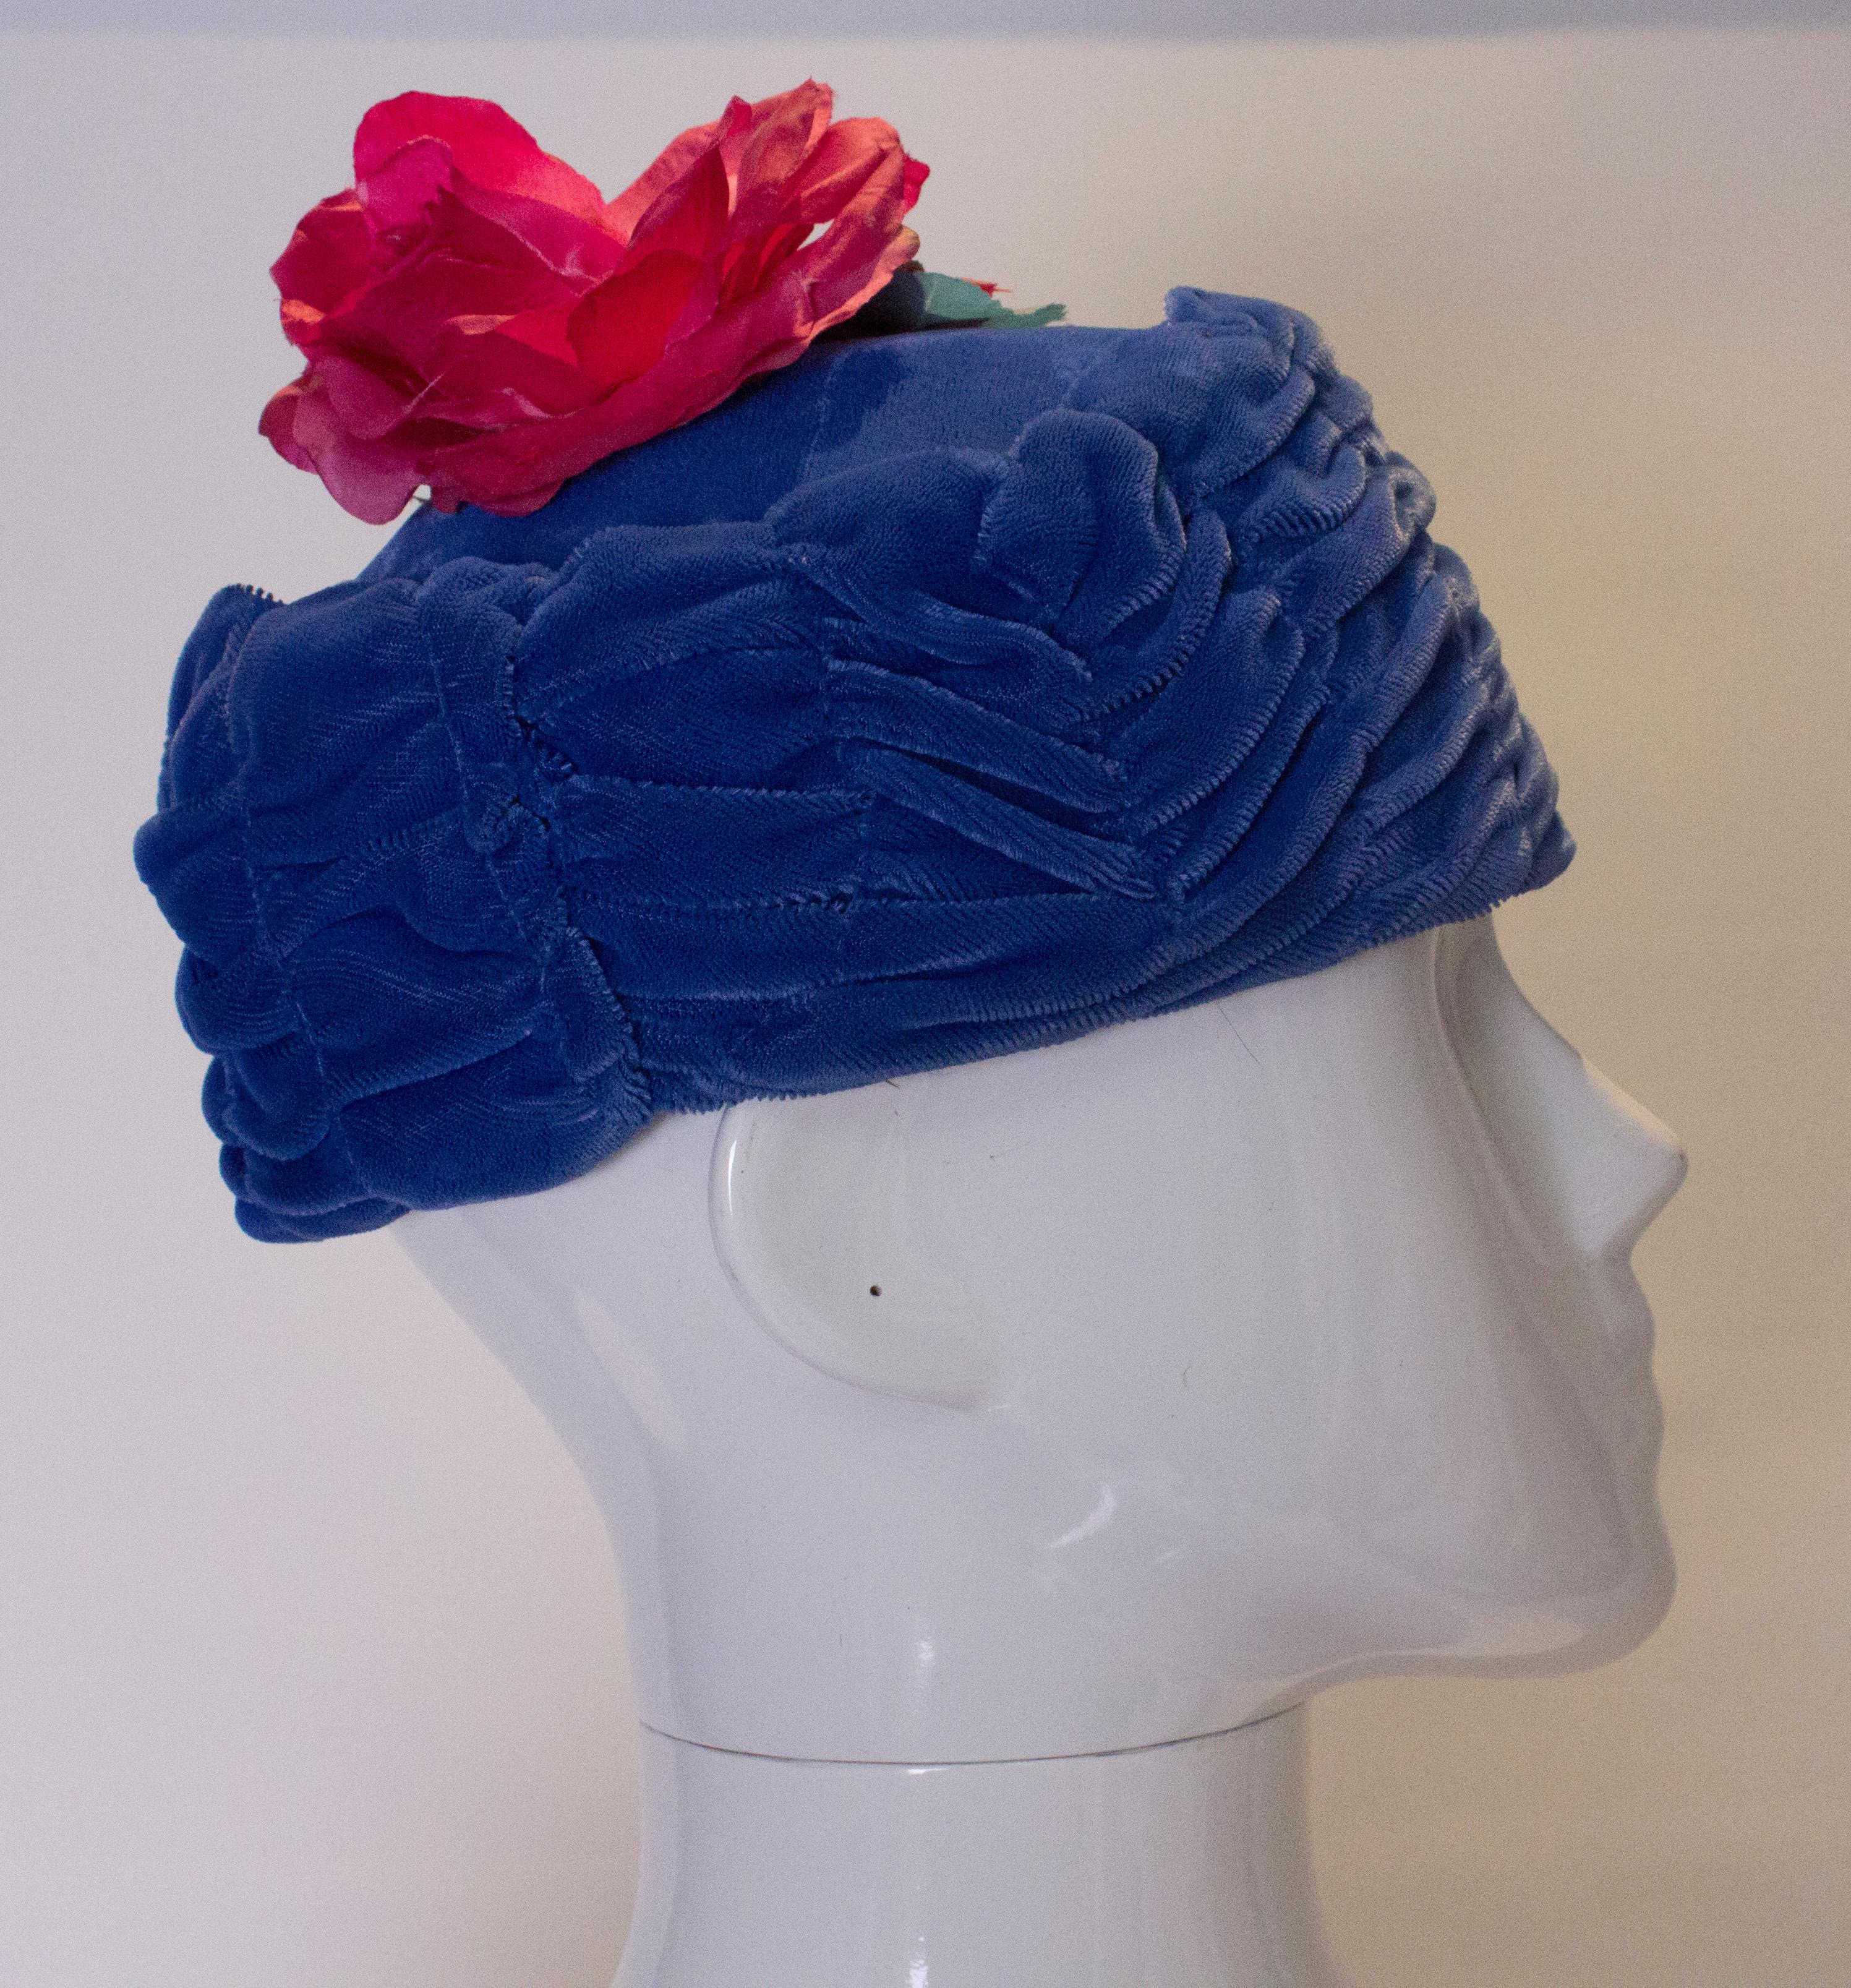 Ein schicker Hut aus blauem Samt im Vintage-Stil, mit einer dekorativen rosa Blume auf der Spitze. Der Hut ist mit Netz gefüttert und hat einen Innenumfang von 22''.